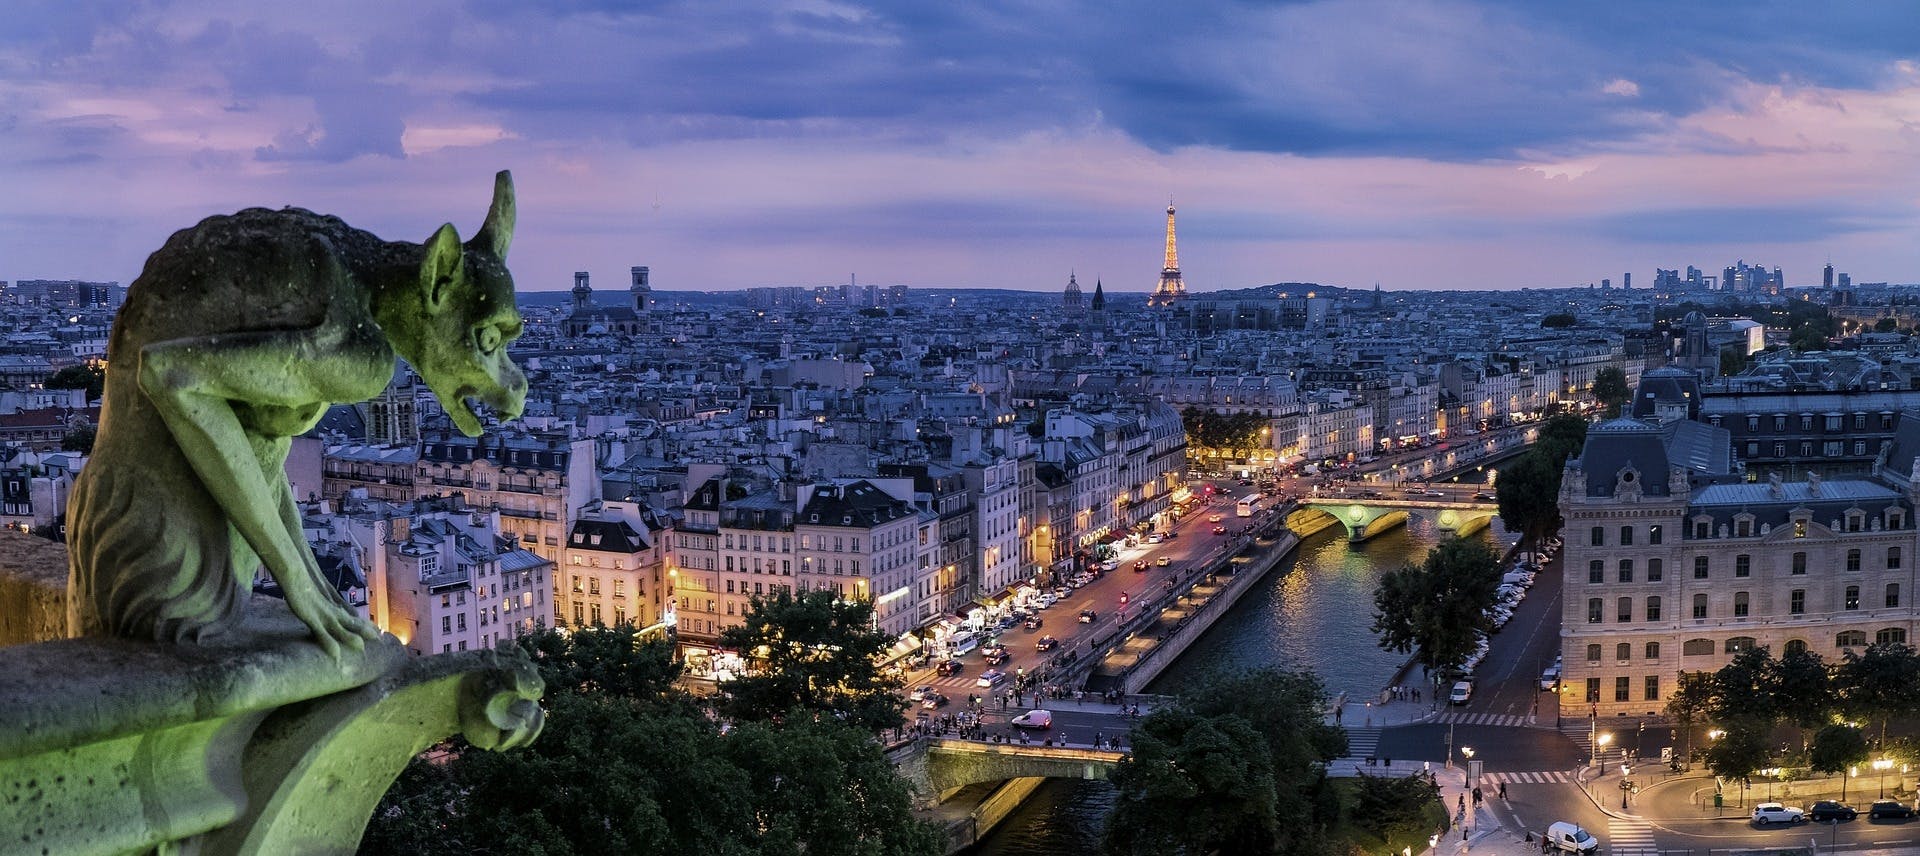 Passeggiata autoguidata a Parigi con gioco misterioso intorno a Notre Dame